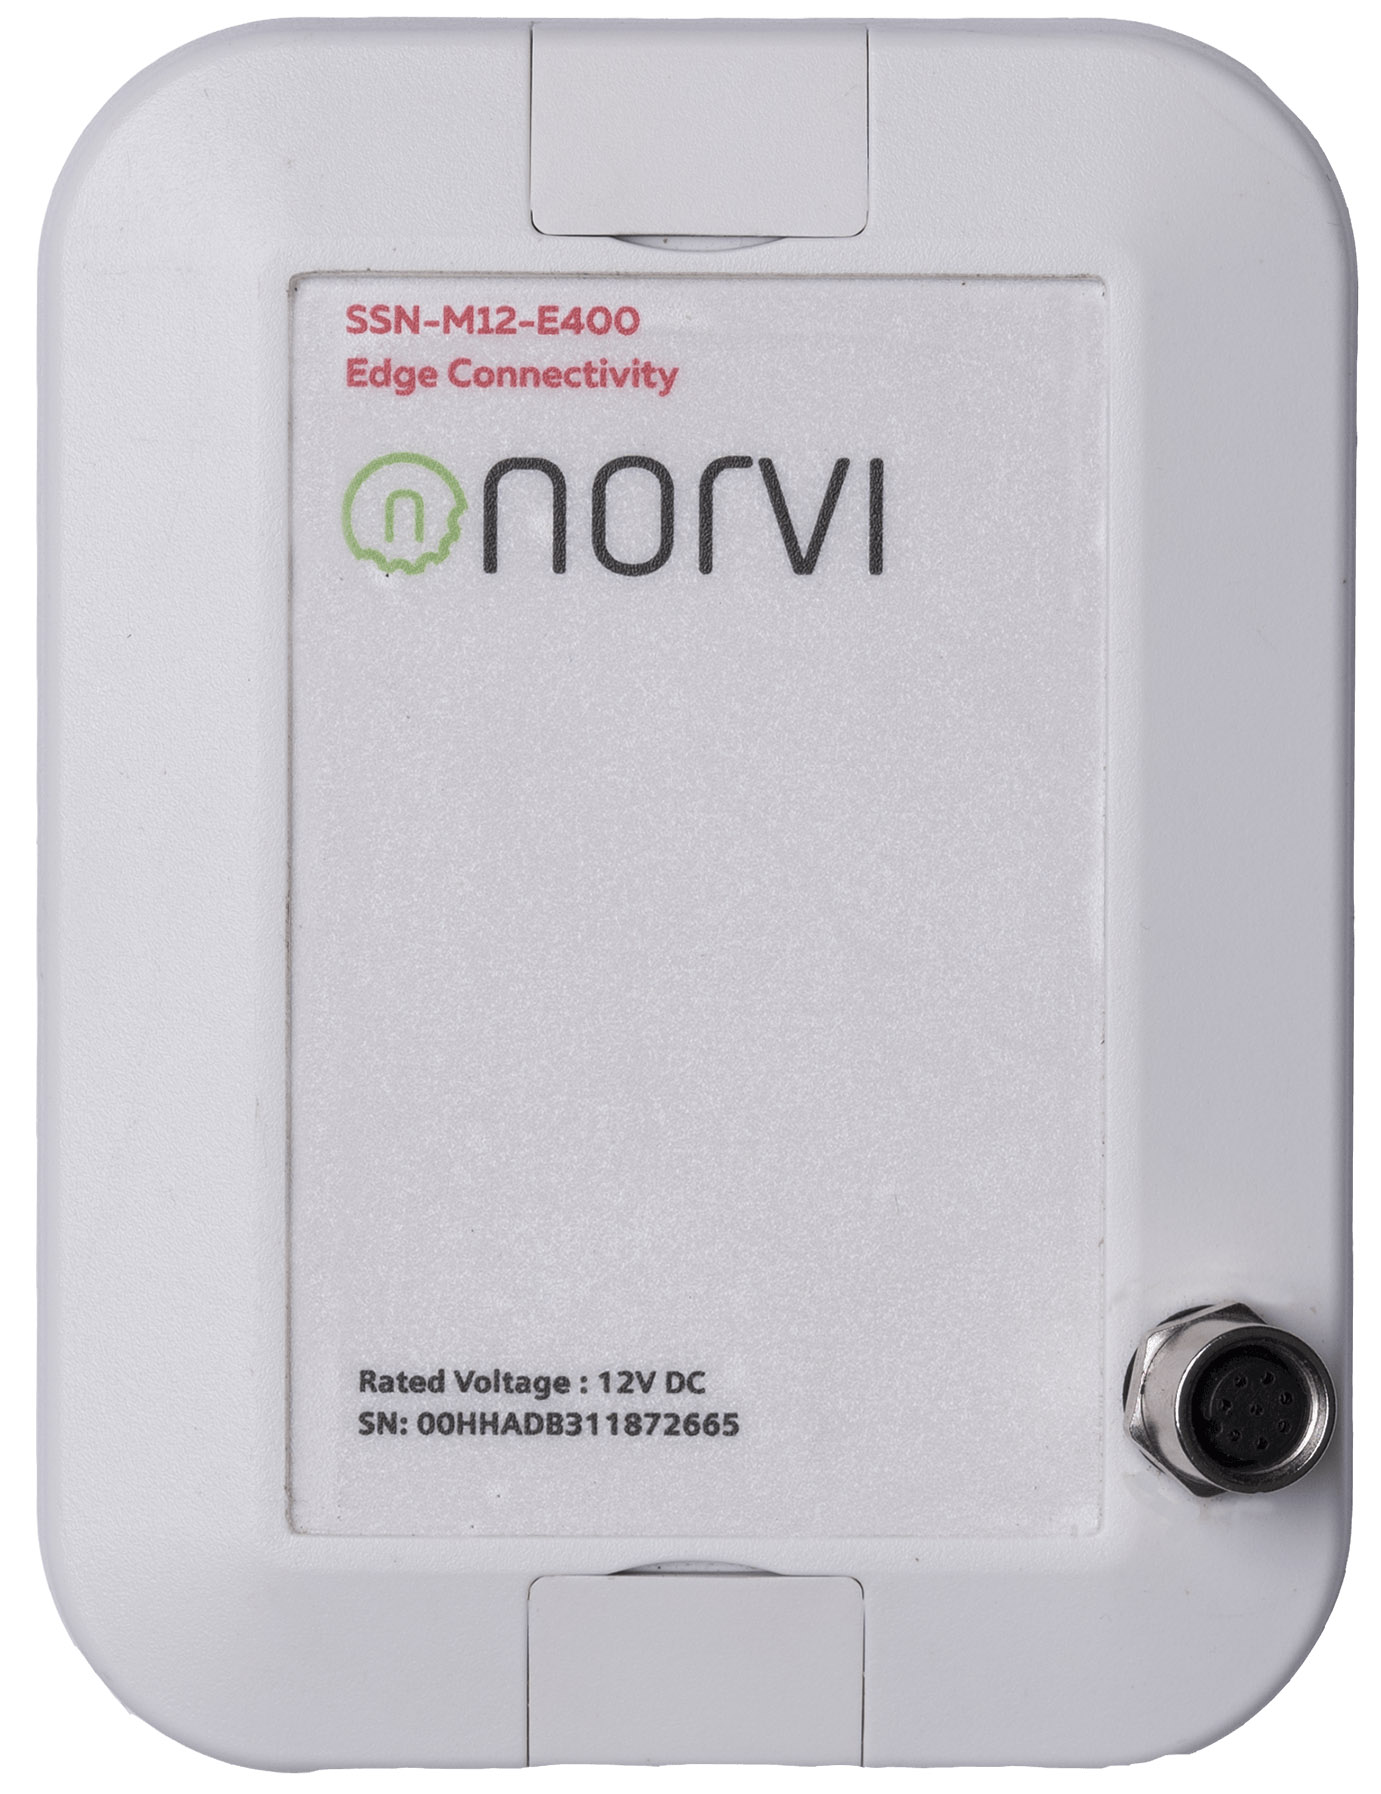 NORVI EC-M11-EG-C1 (Programmable IoT Node, Wallmount)